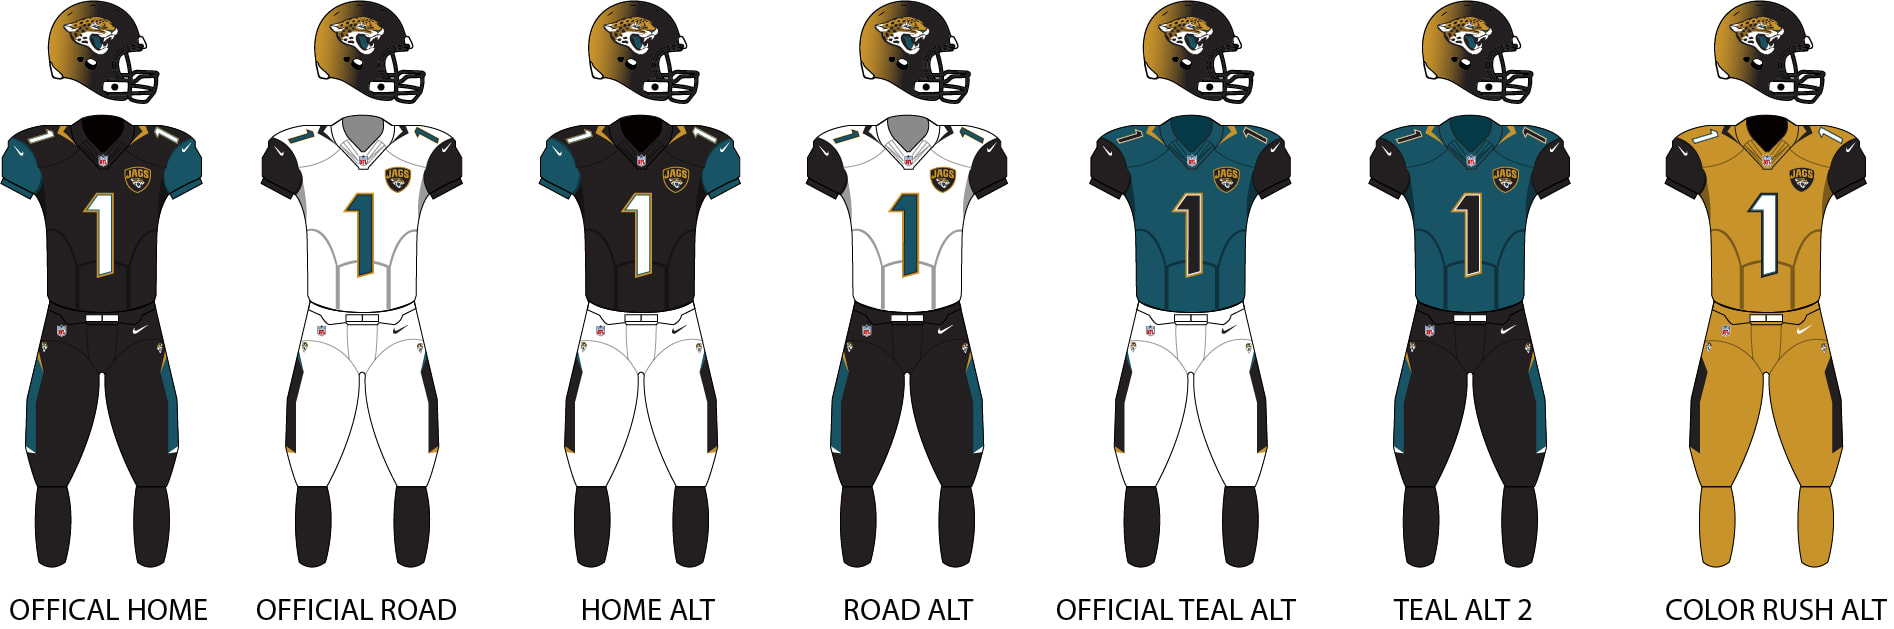 2017 jaguars uniforms